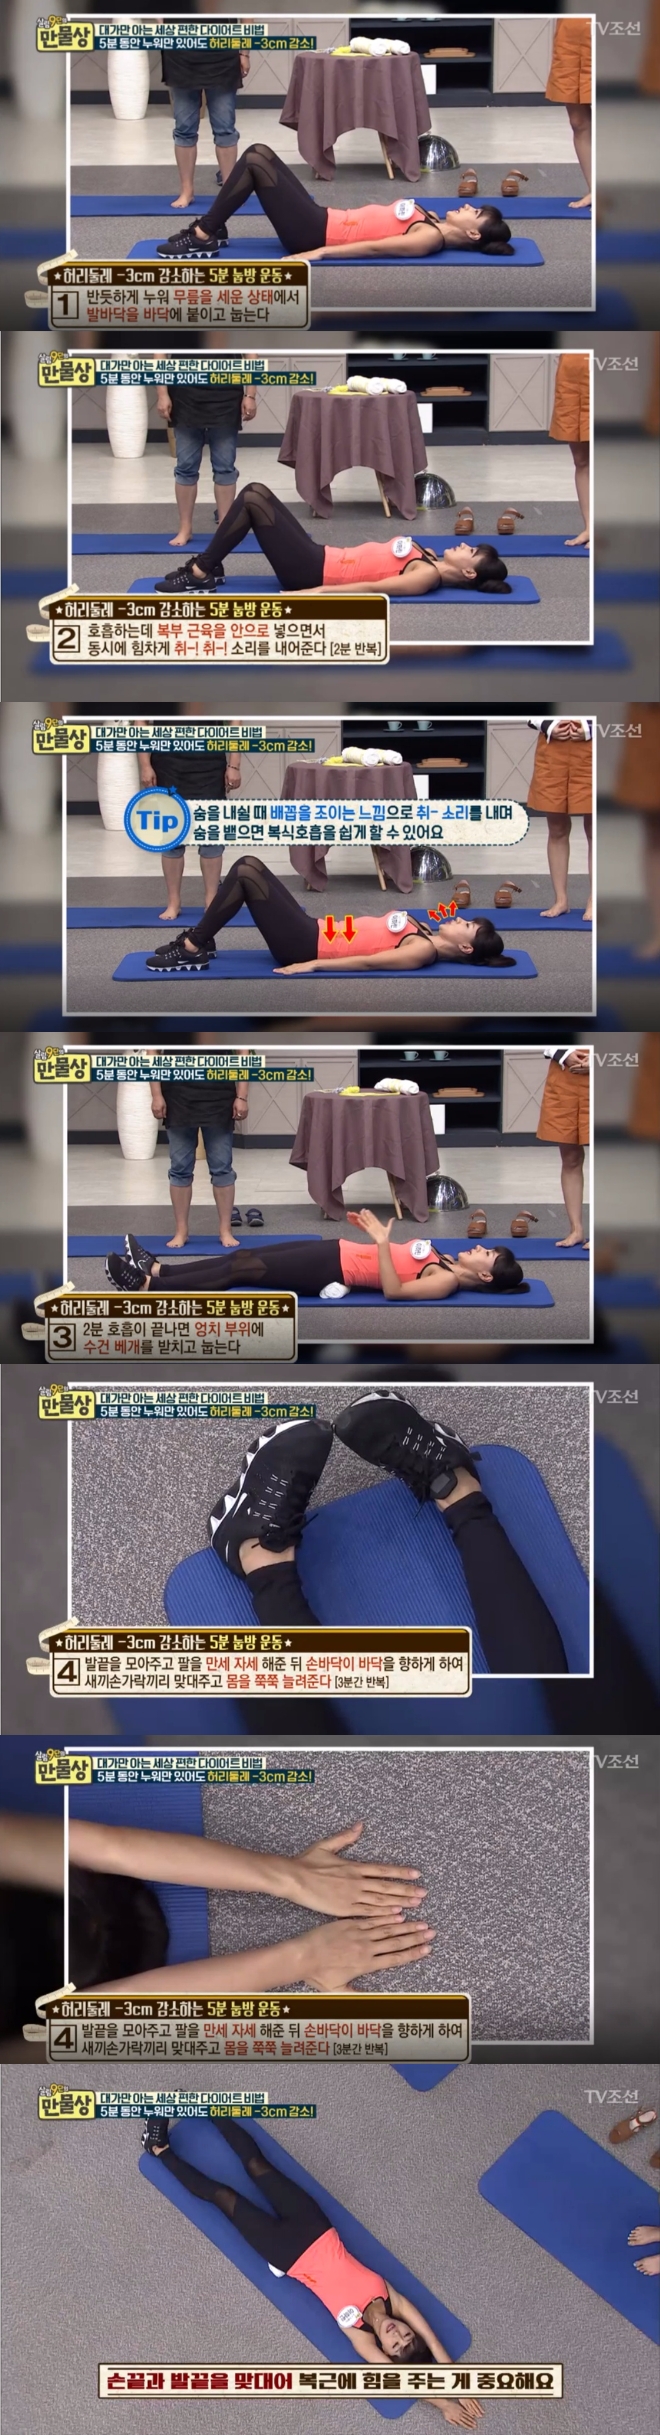 지난 27일 밤 방송된 TV조선 '살림9단의 만물상'에서는 허리 살을 빼주는 '5분 눕방운동법'이 공개됐다. 사진=TV조선 방송 캡처